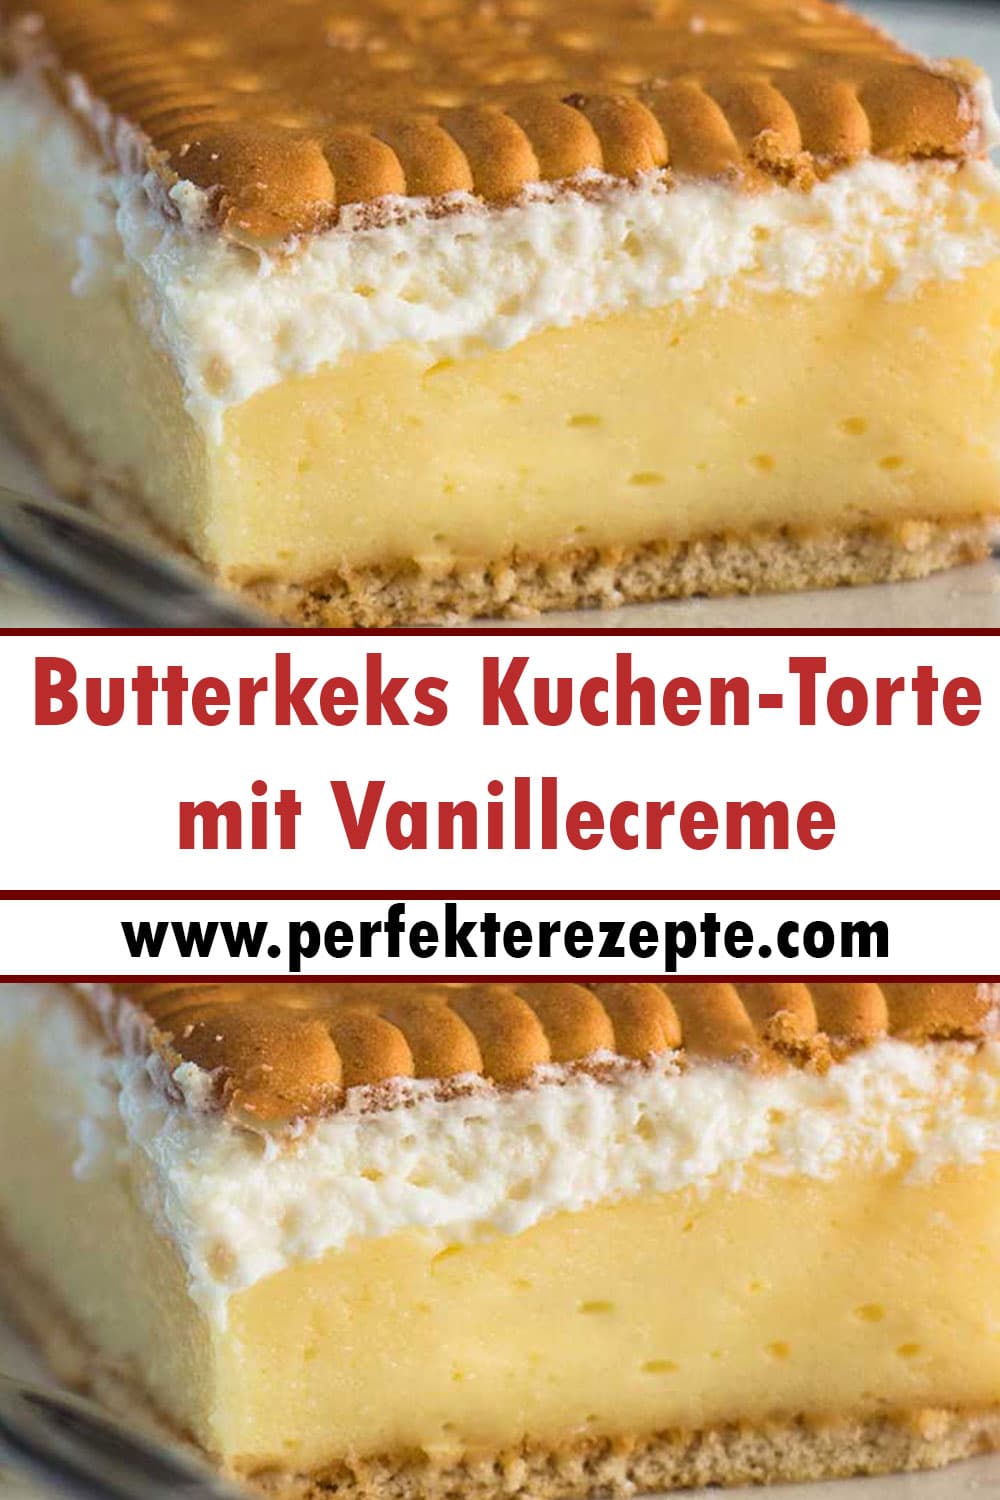 Butterkeks Vanillecreme-Schnitten Kuchen Torte / Kekskuchen | ohne backen Rezept